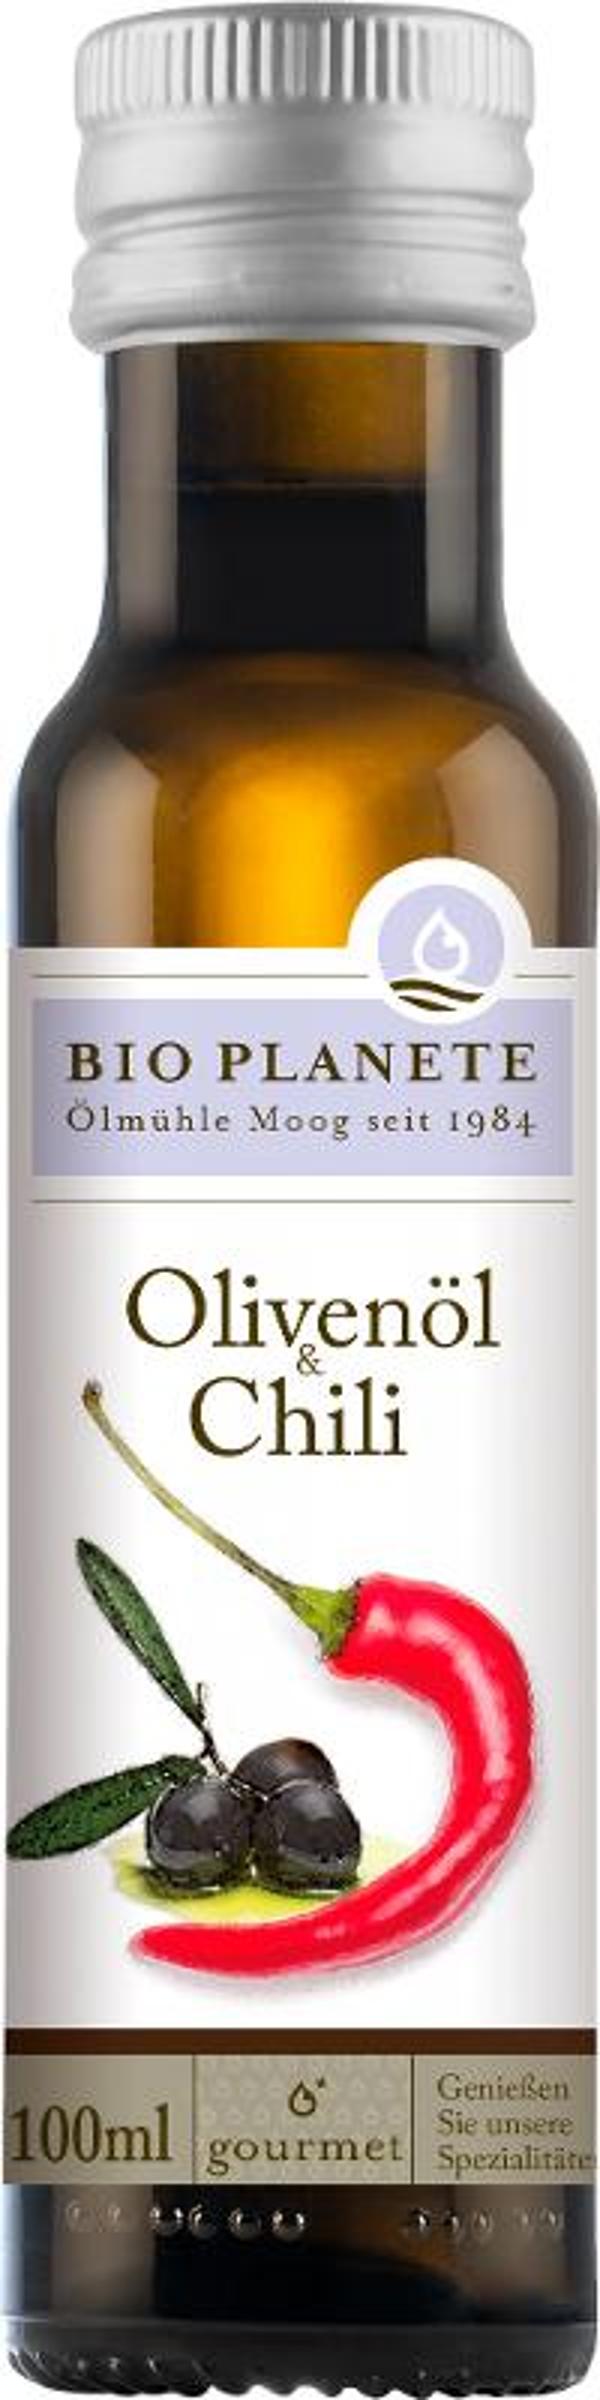 Produktfoto zu Olivenöl mit Chili von Bio Planete